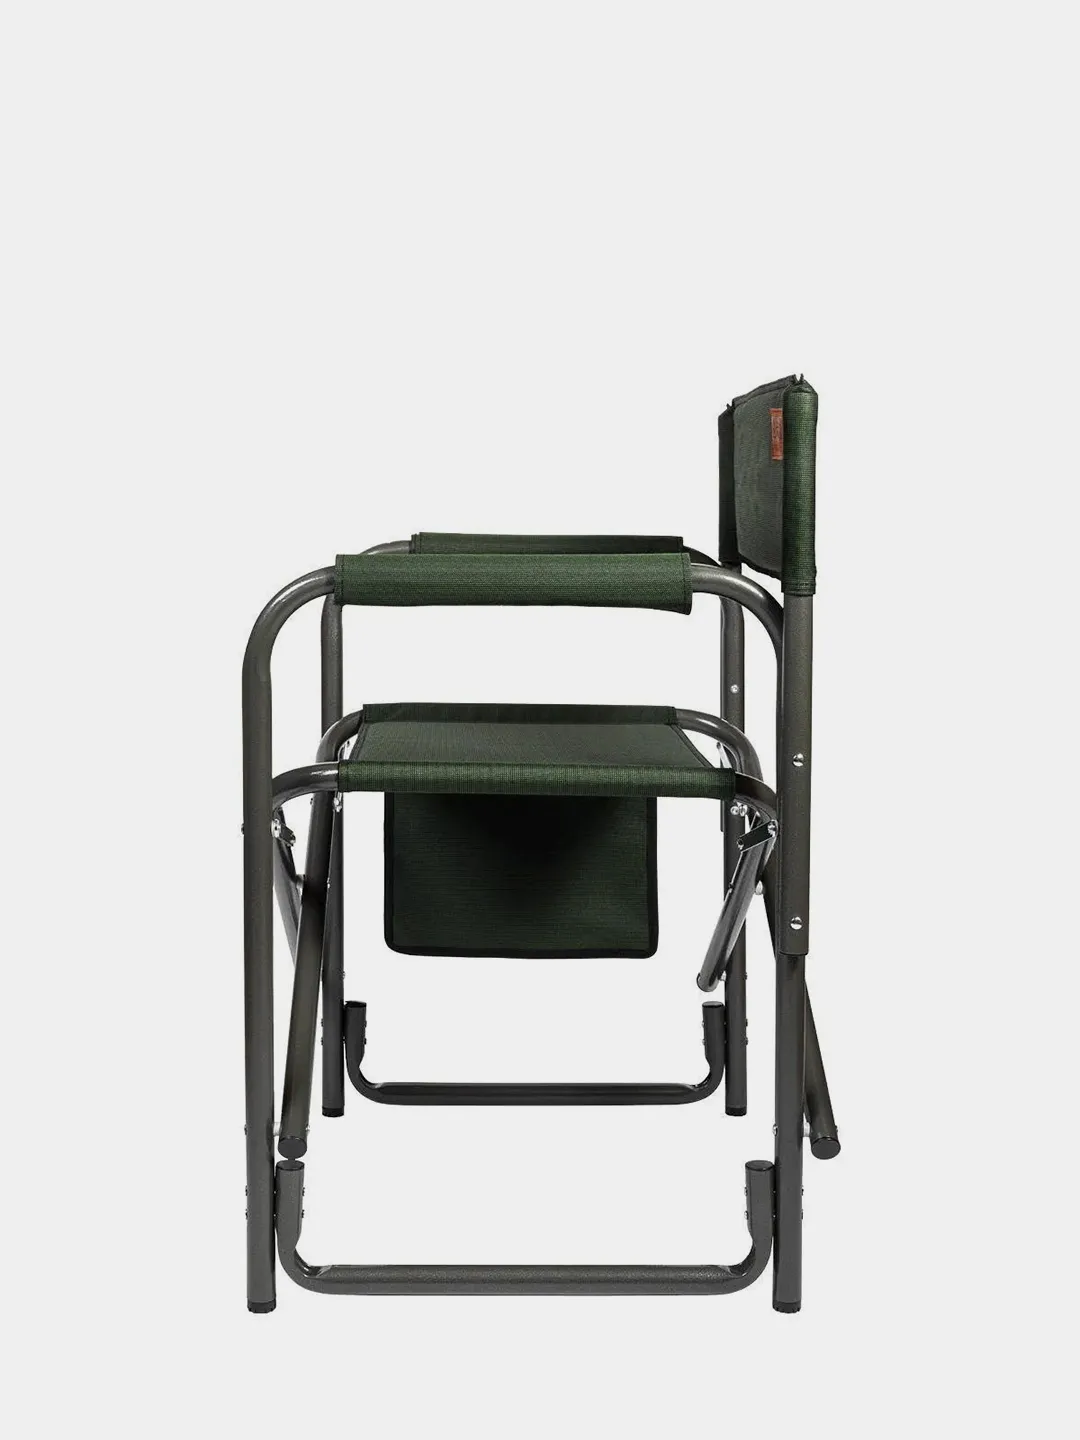 Просто и практично: складной походный стул своими руками